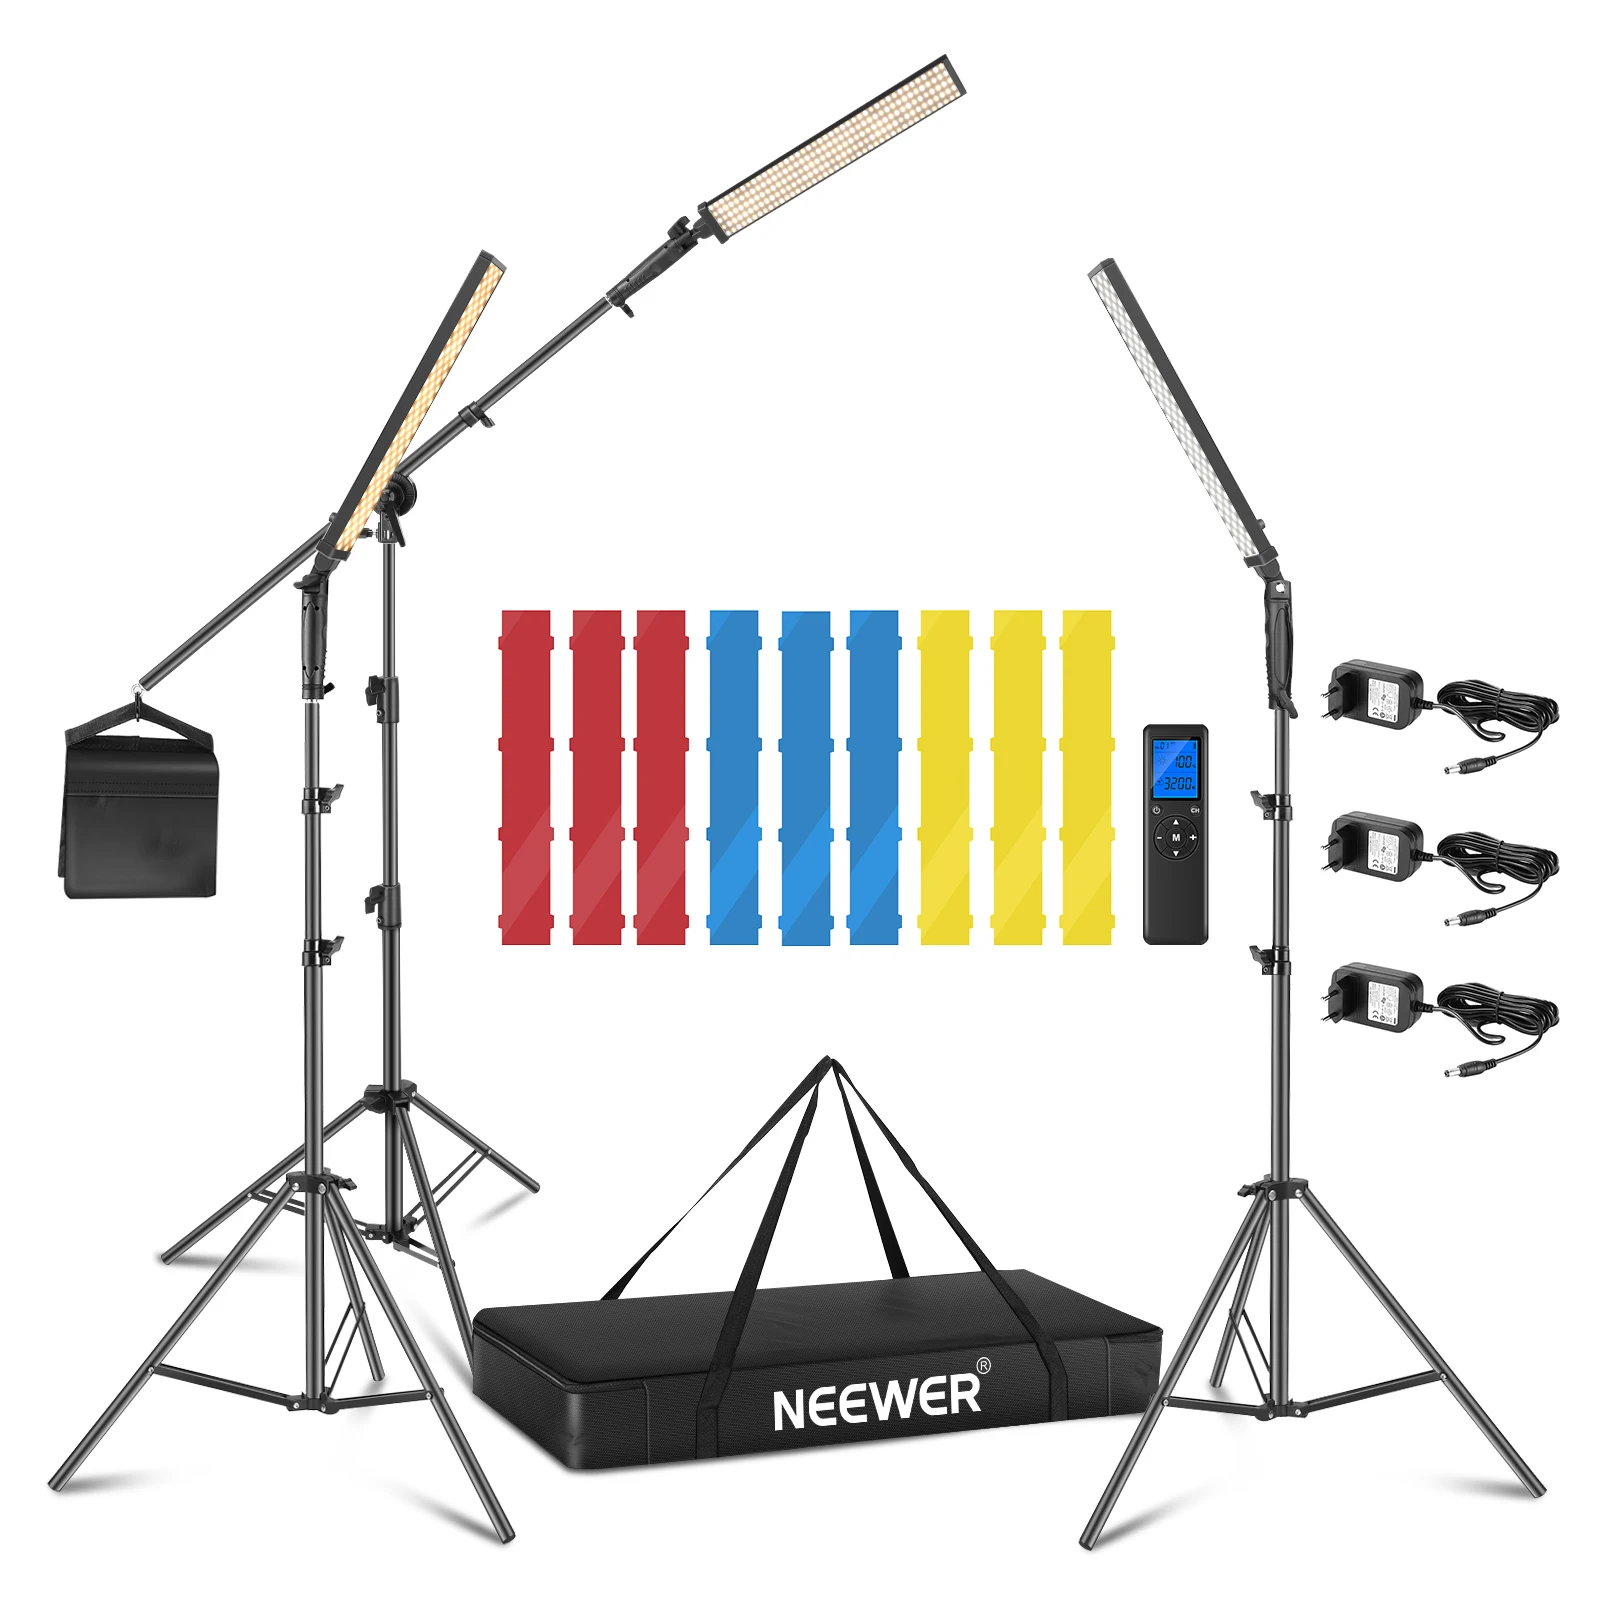 

Neewer 3 упаковки 2,4 ГГц светодиодный светильник для фотосъемки набор для освещения и 3 цветных фильтра-пульт дистанционного управления с регул...